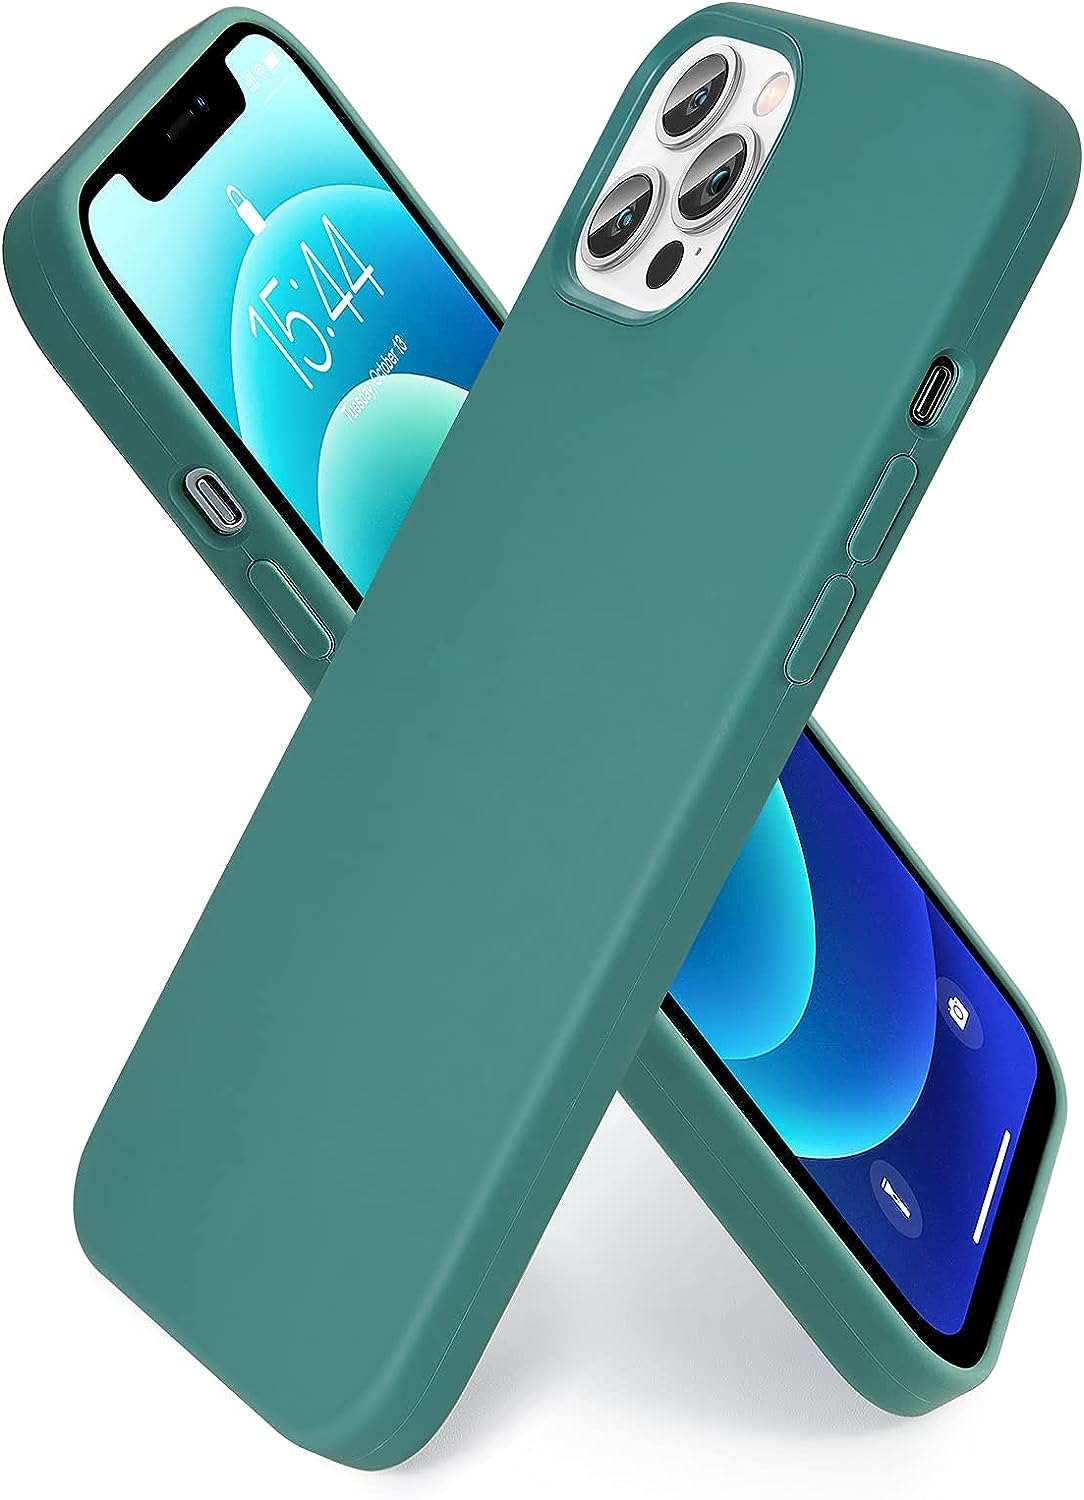 SMARTDEVIL Cover in Silicone Compatibile iPhone 12 / iPhone 12 PRO con Gratuito Pellicola Vetro, 6.1 Pollici, Custodia Protettiva Corpo Morbido setoso Antiurto con Fodera in Microfibra, Blu